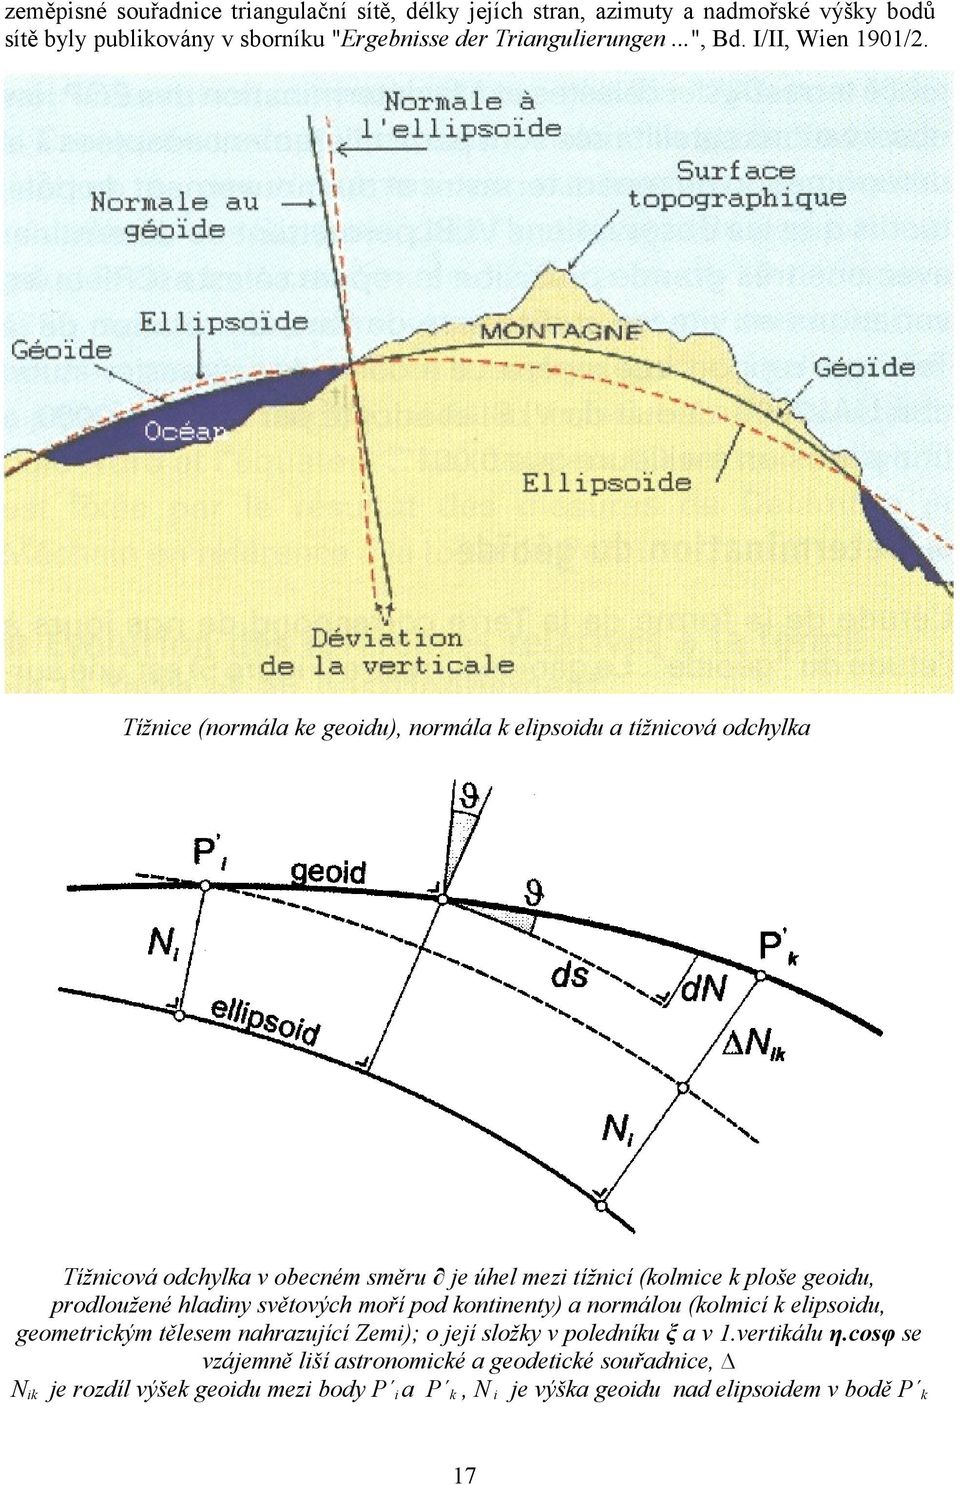 Tížnice (normála ke geoidu), normála k elipsoidu a tížnicová odchylka Tížnicová odchylka v obecném směru je úhel mezi tížnicí (kolmice k ploše geoidu, prodloužené